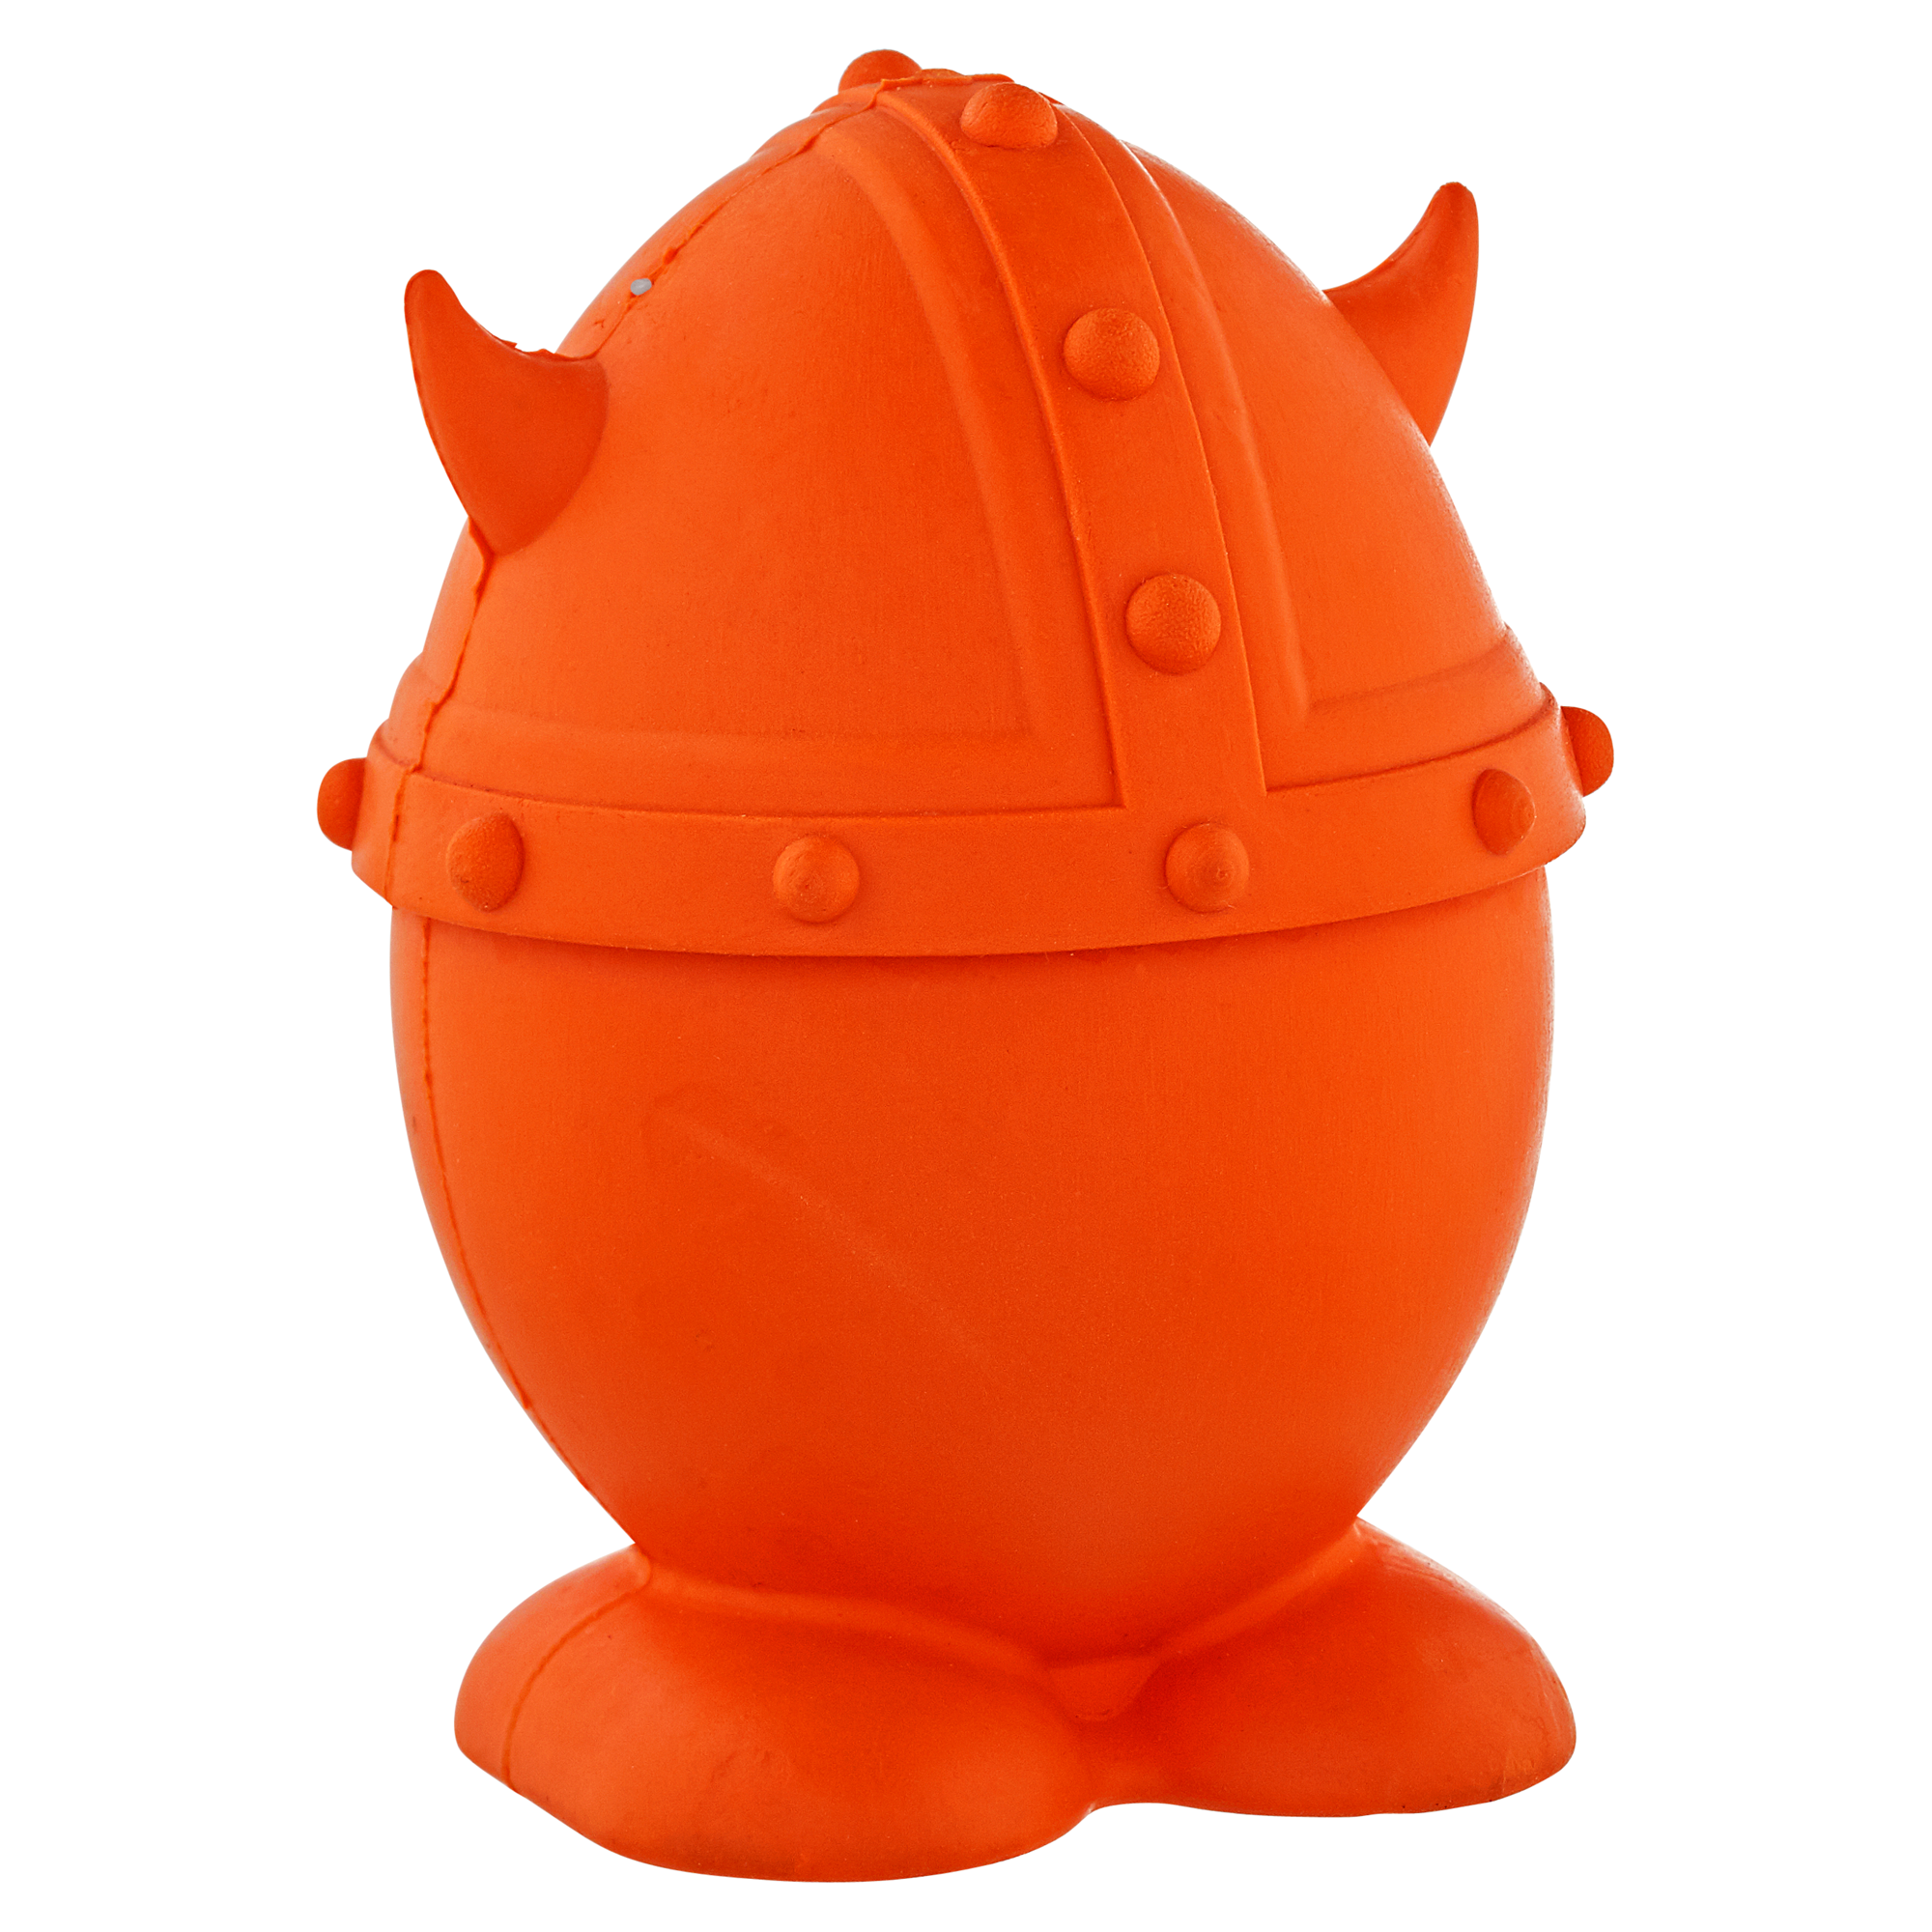 Hundespielzeug "Viking" Gummi orange 6,5 cm + product picture